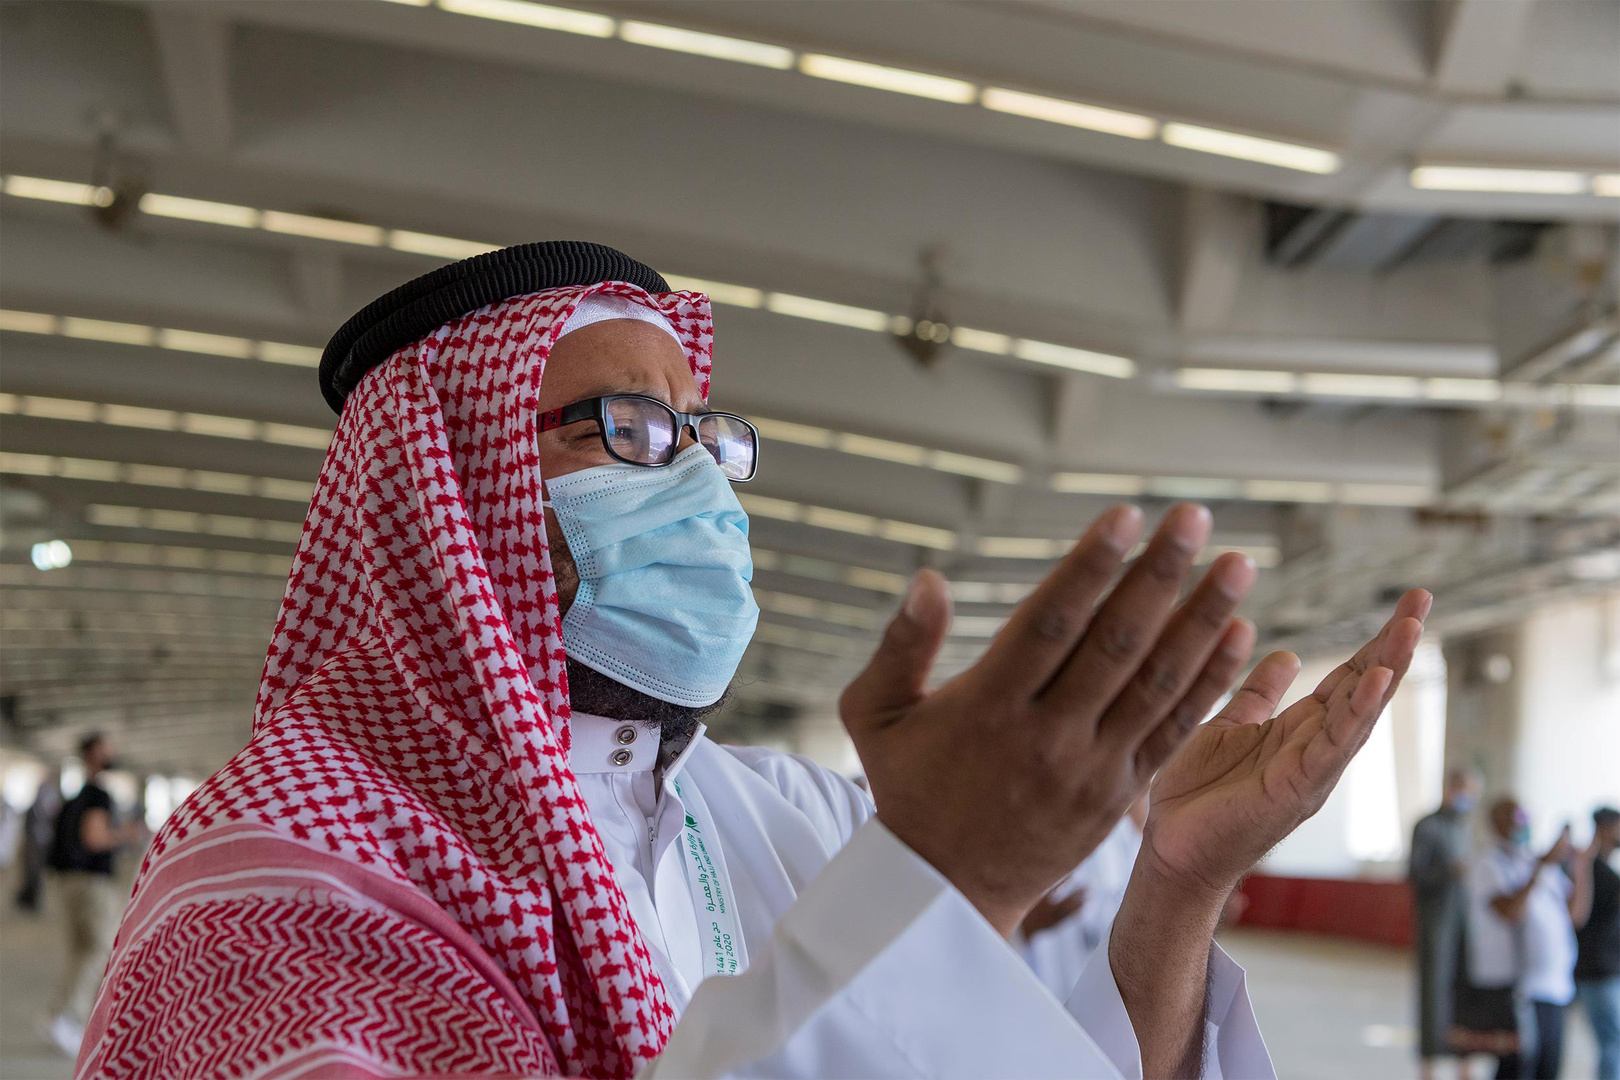 صورة استمرار التباعد وإرتداء الكمامات في المساجد السعودية